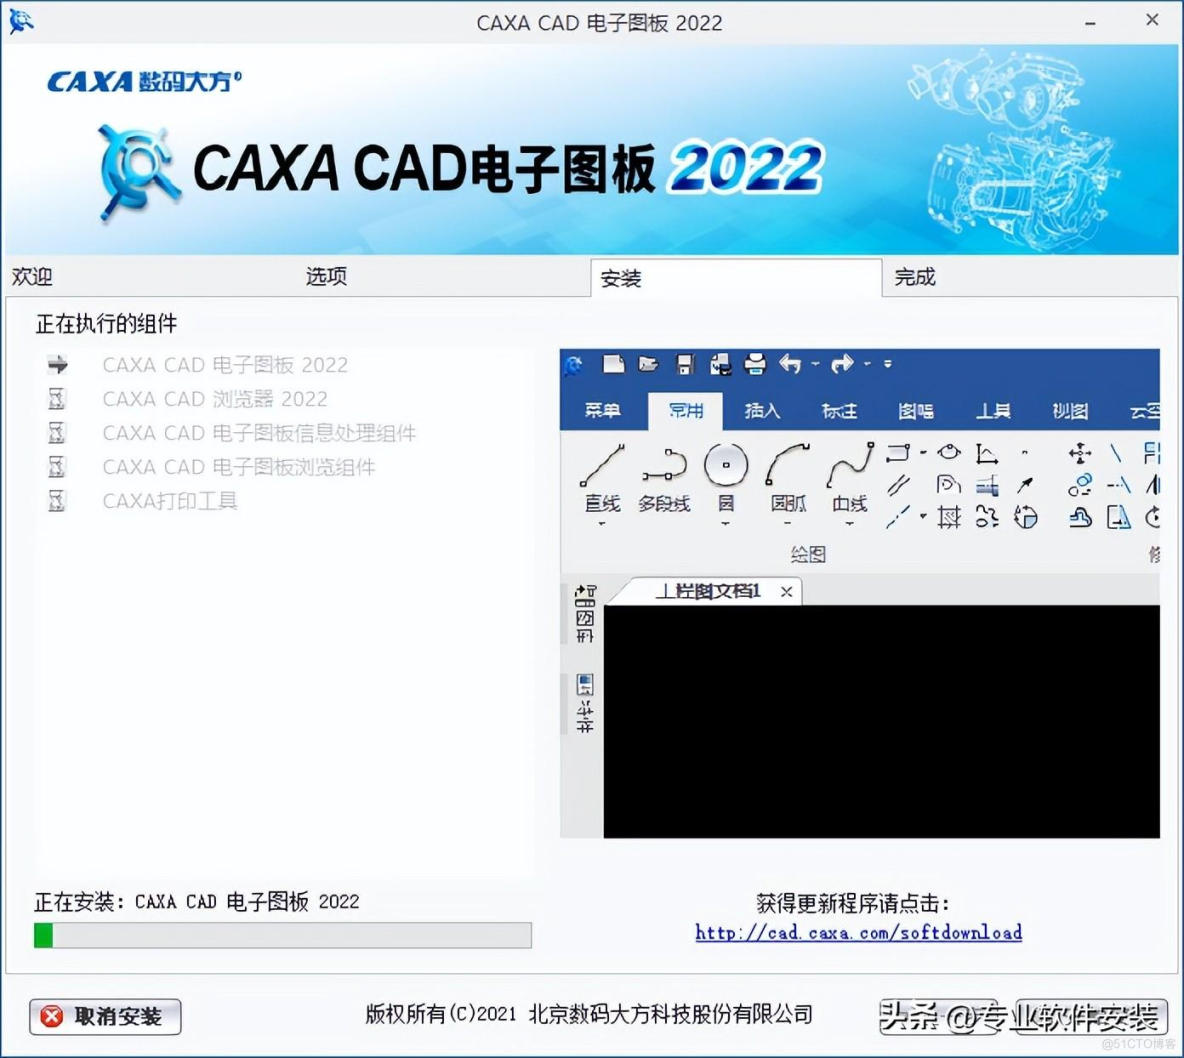 CAXA CAD电子图版 2022软件安装包和安装教程_CAXA CAD_05